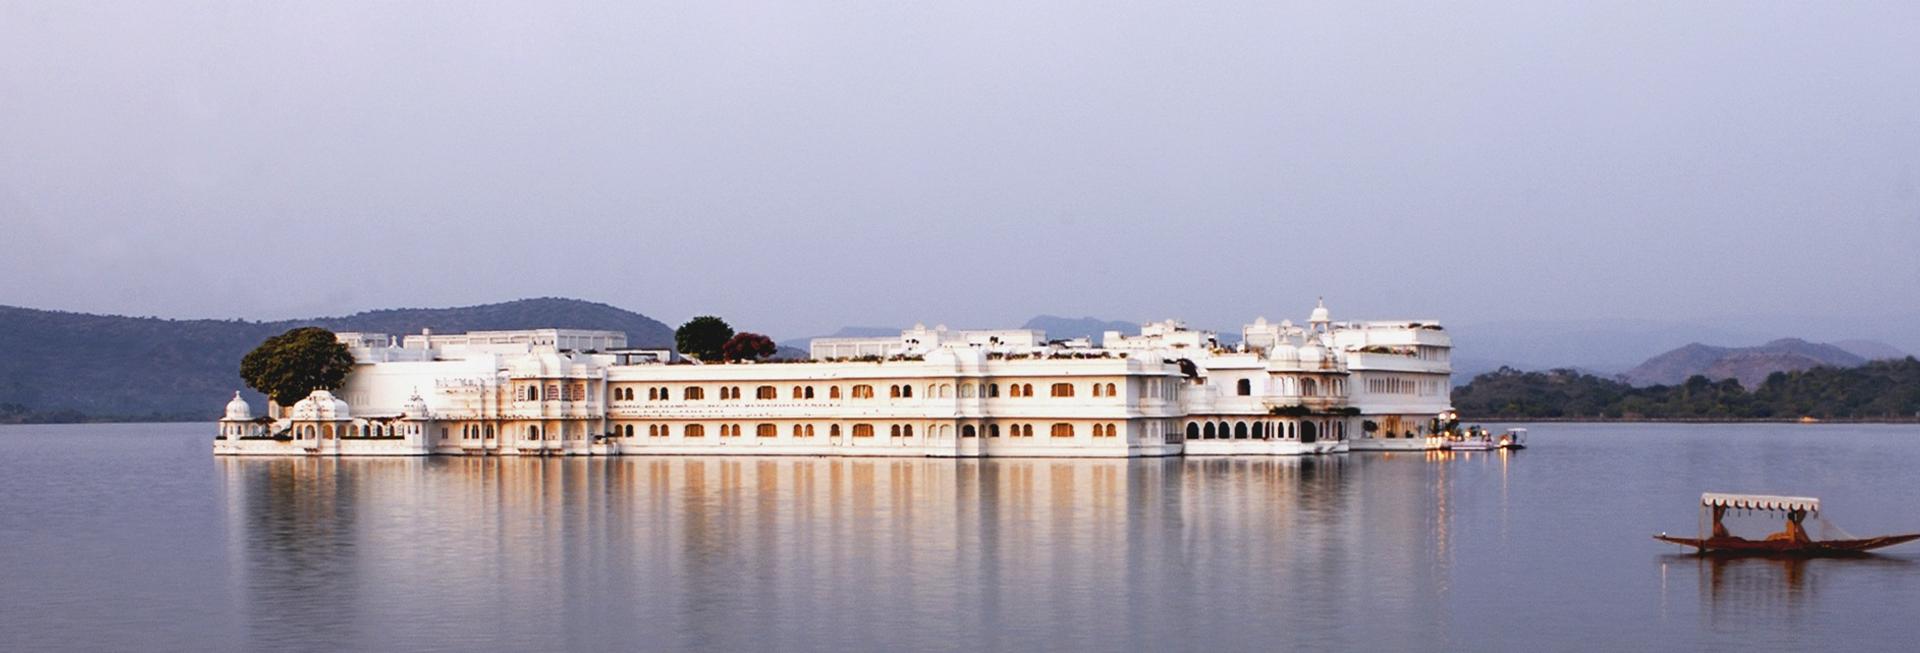 Taj Lake Palace, Udaipur